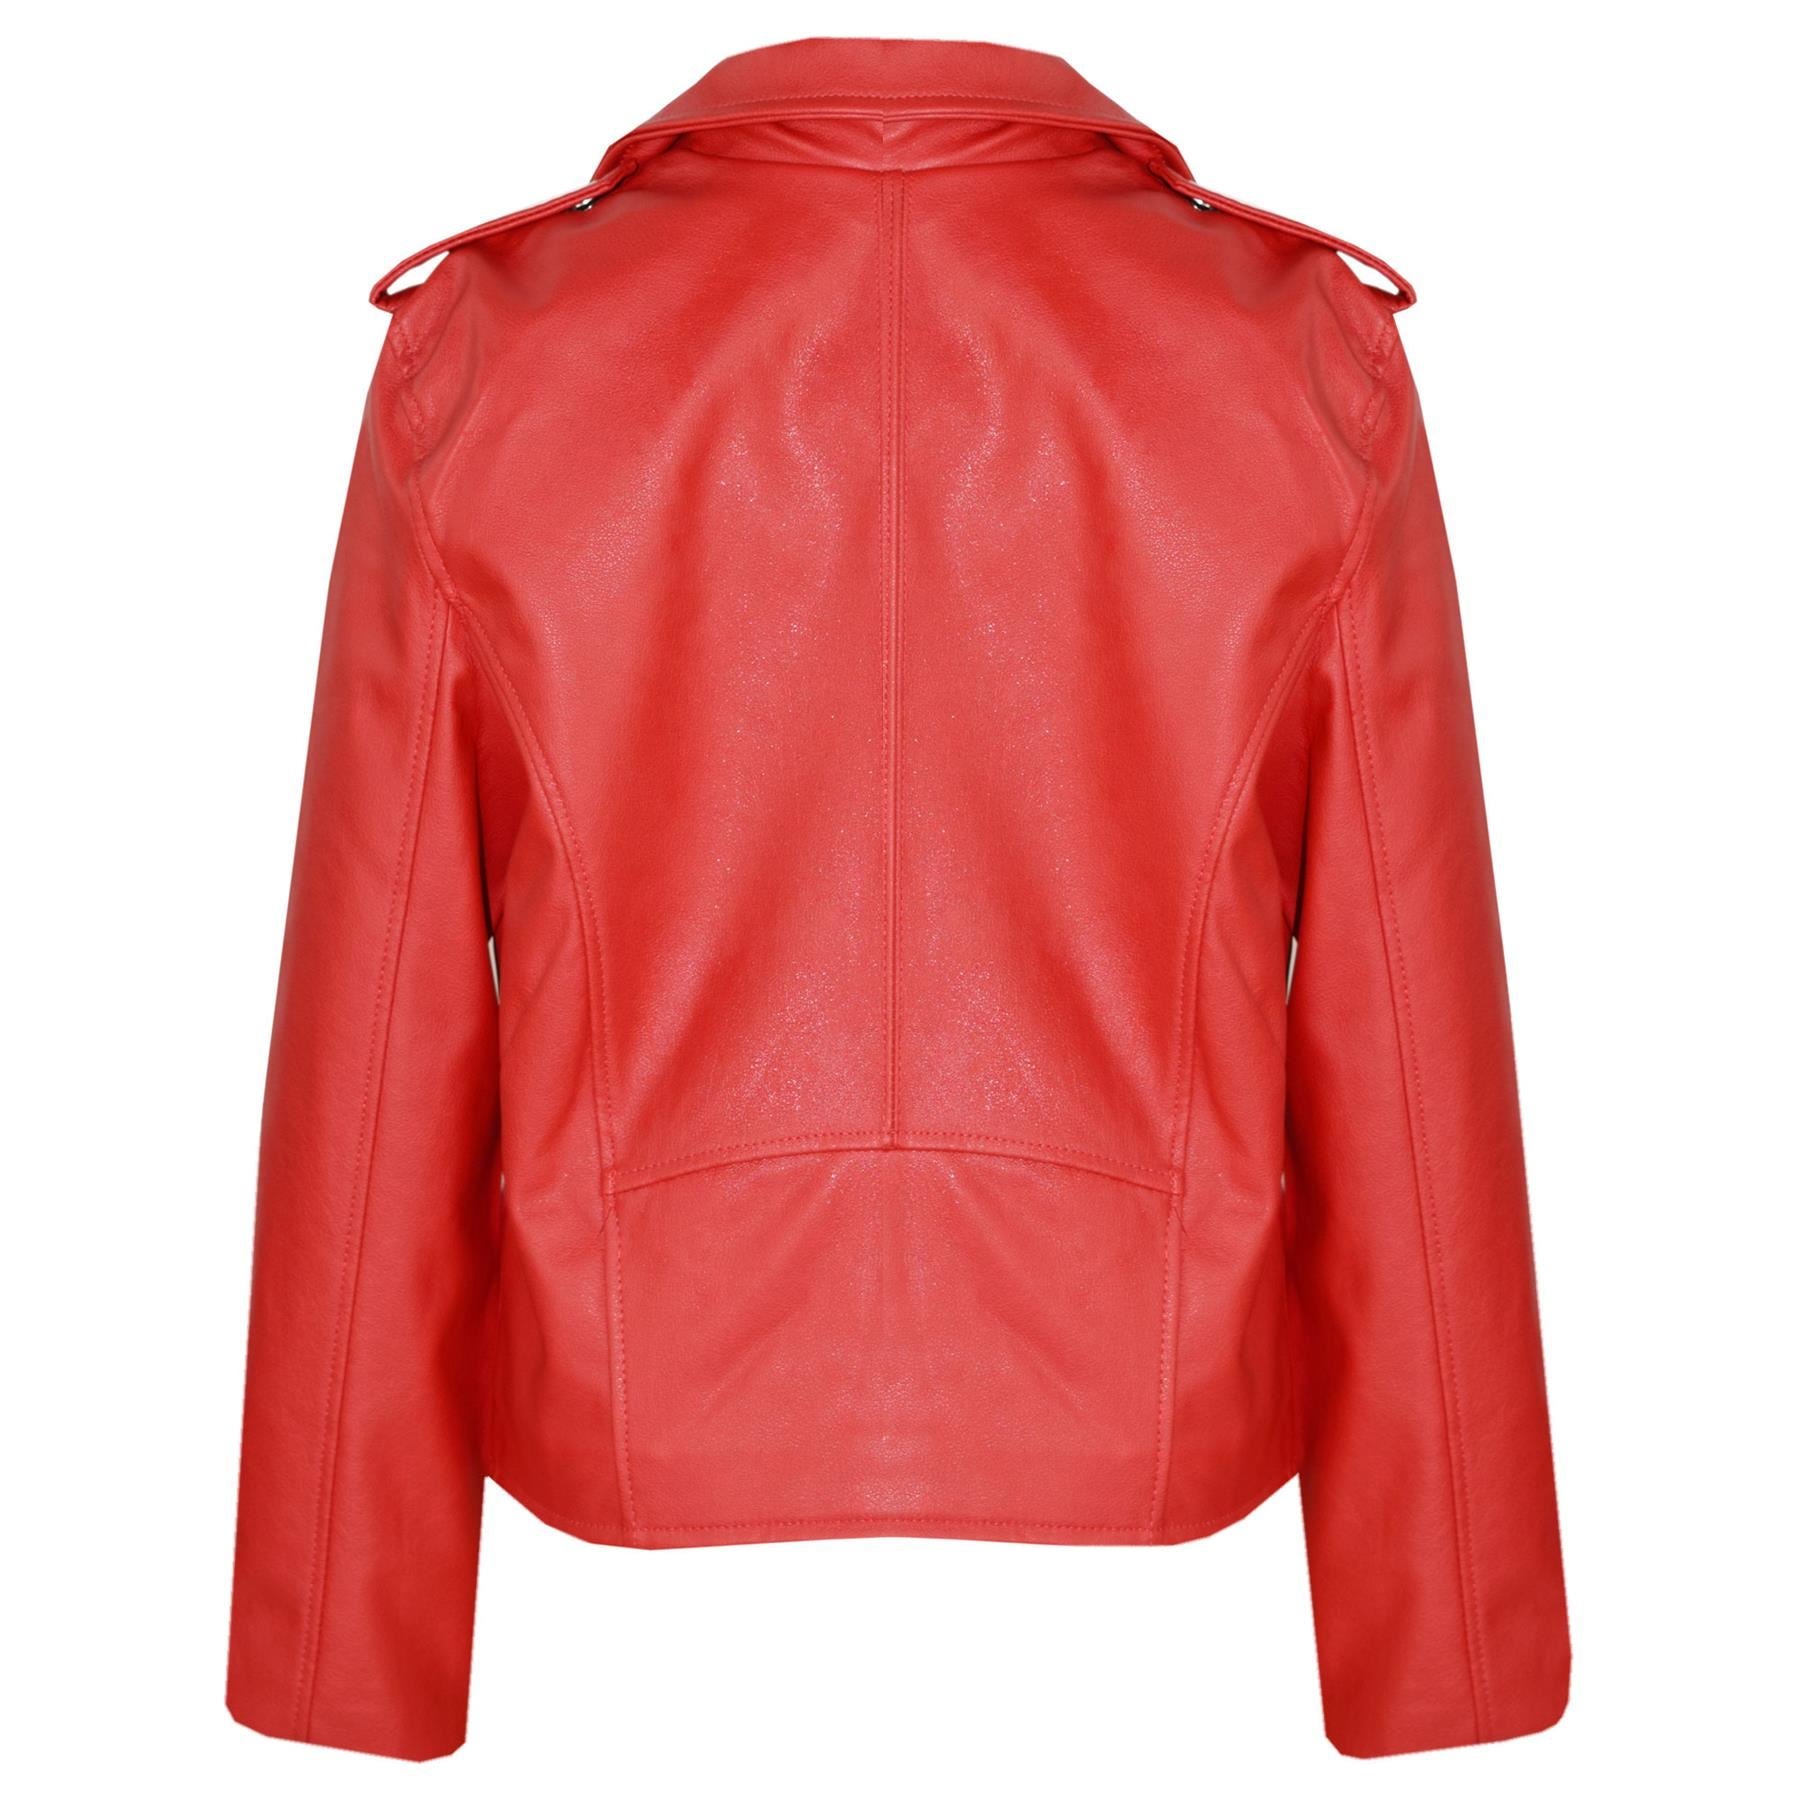 Kids Girls Red Jackets PU Leather Zip Up Biker Coat Overcoats